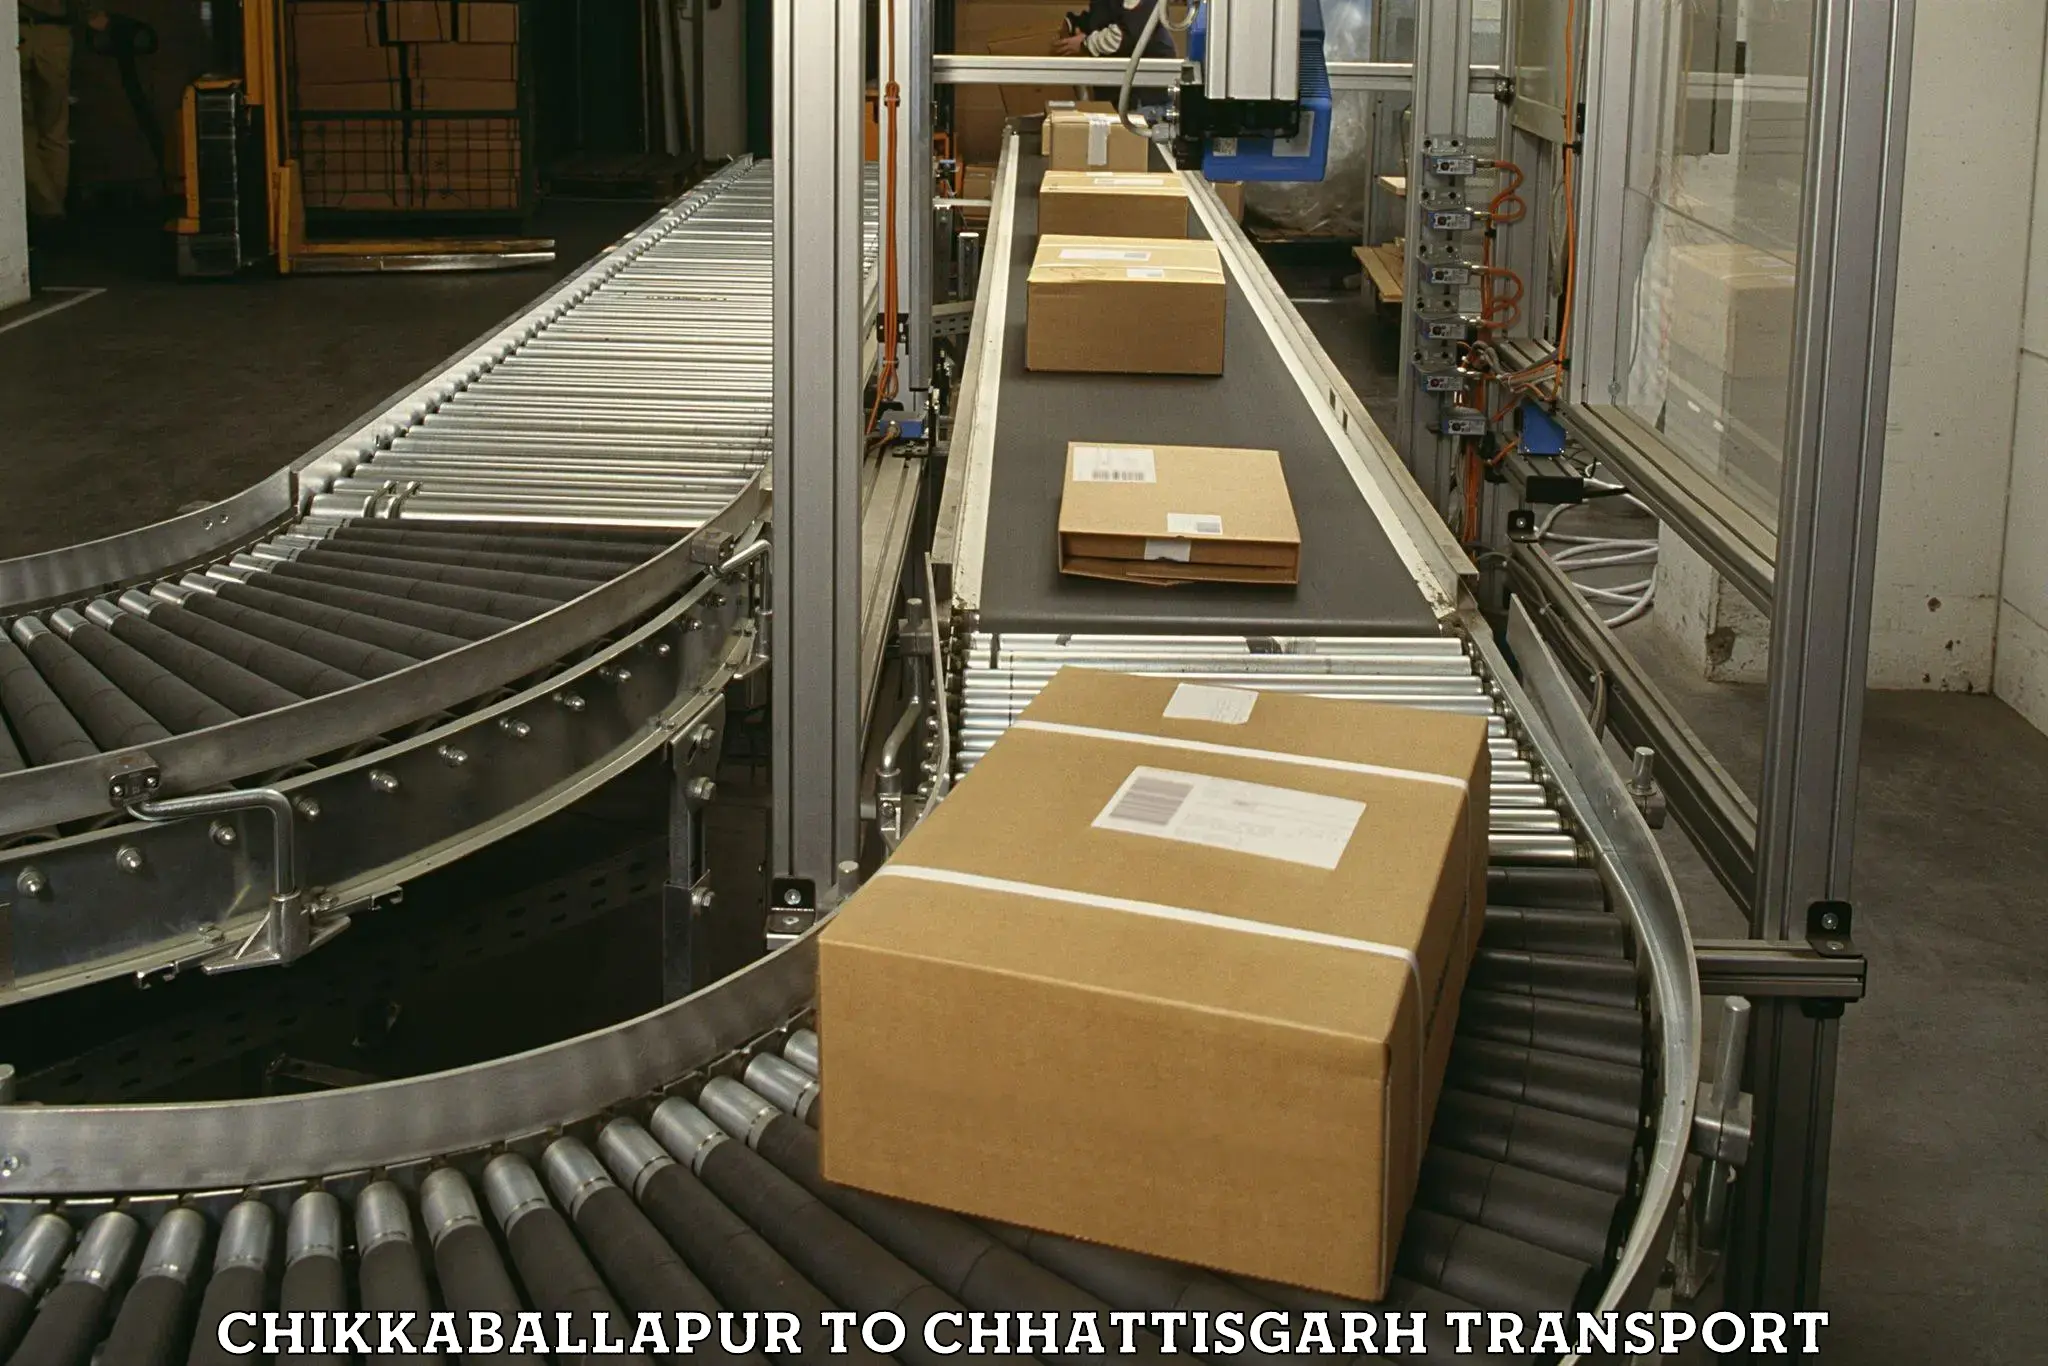 Commercial transport service Chikkaballapur to Berla